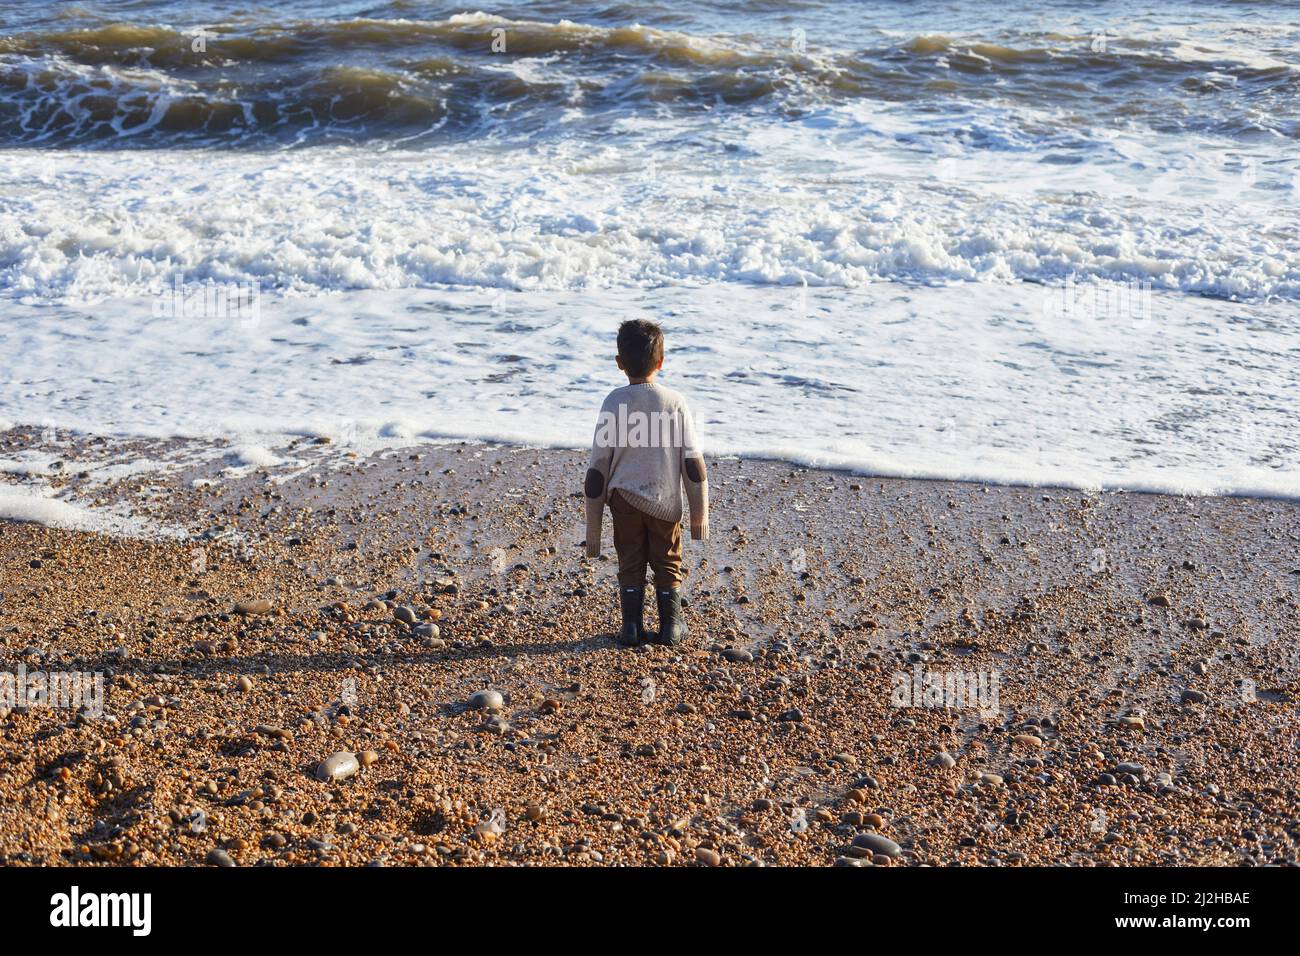 Reino Unido, Devon, Vista trasera del niño en un jersey de gran tamaño mirando las olas del mar Foto de stock